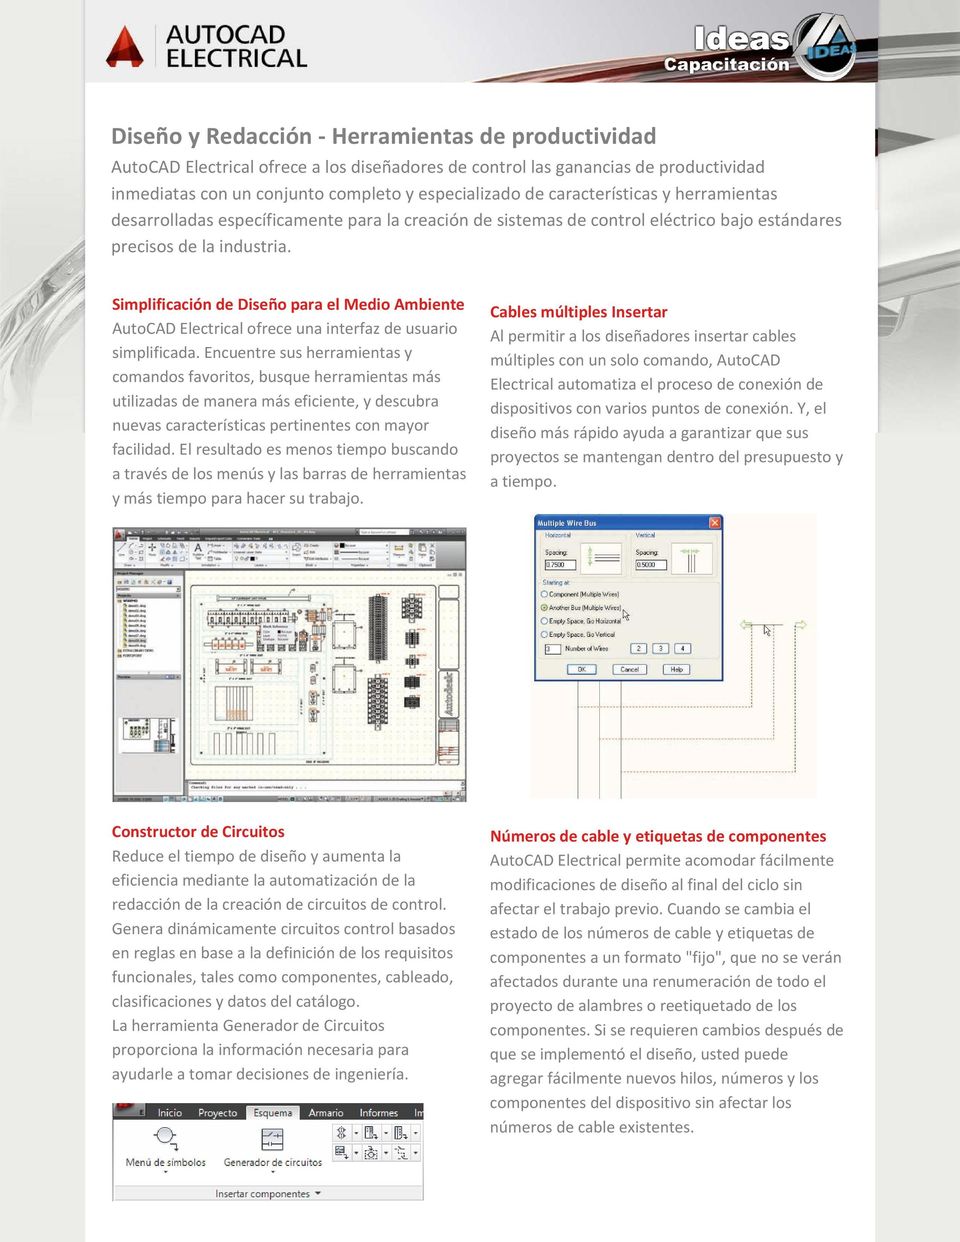 Simplificación de Diseño para el Medio Ambiente AutoCAD Electrical ofrece una interfaz de usuario simplificada.